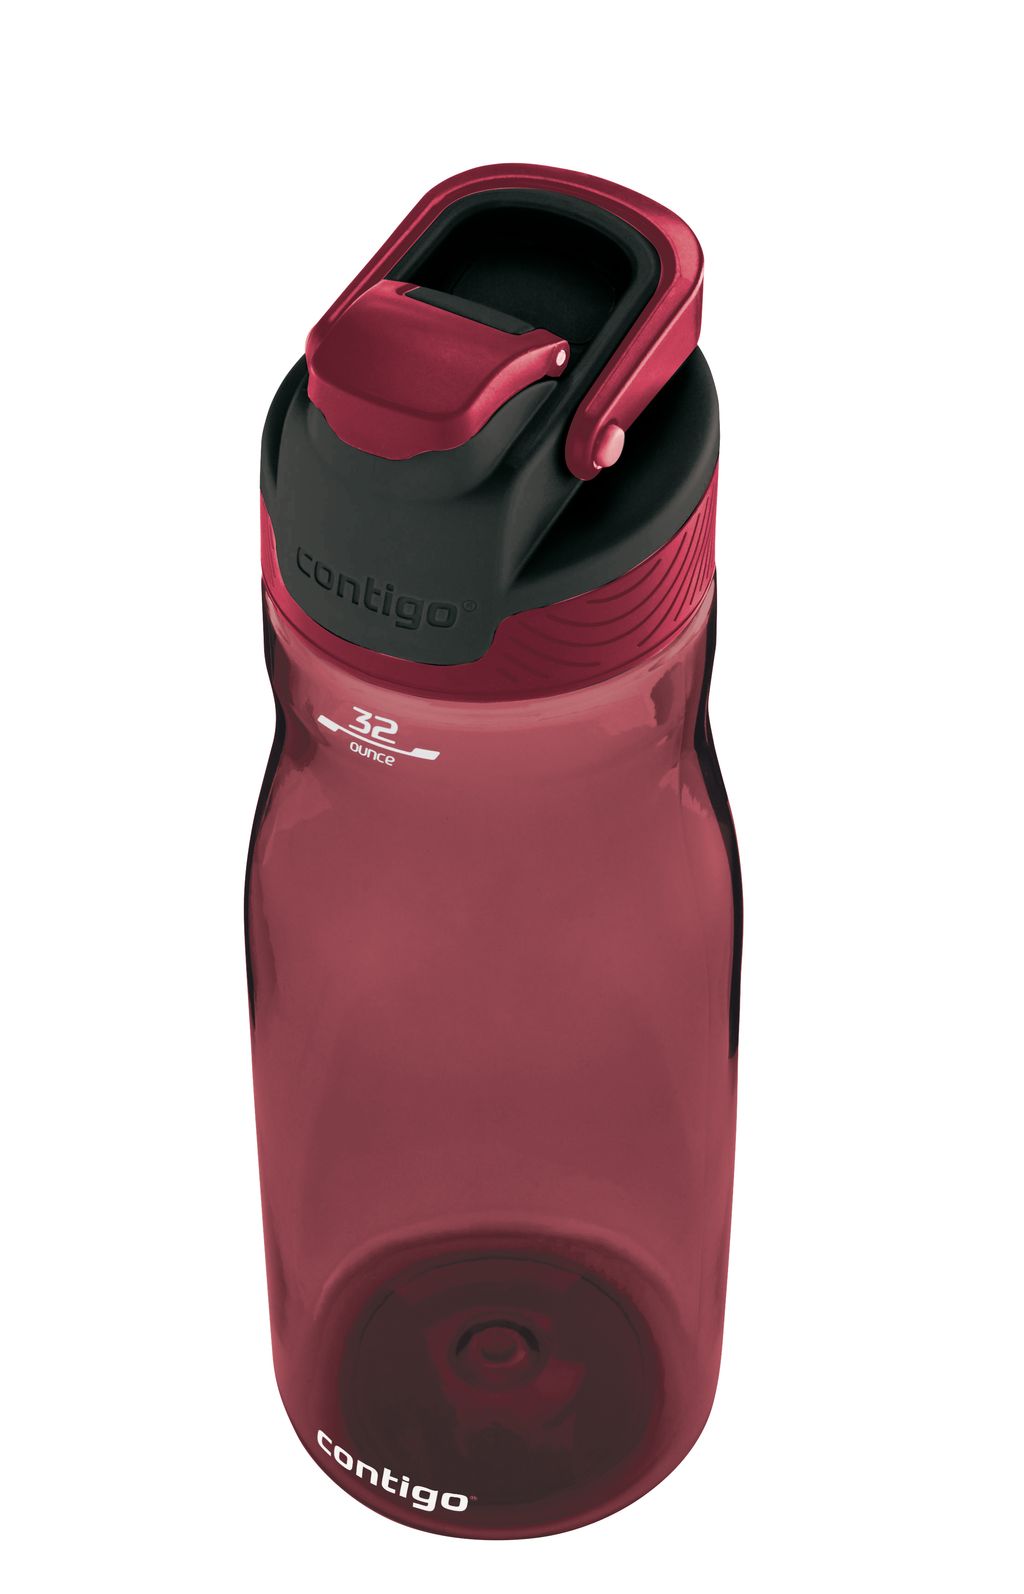 Contigo Autoseal Water Bottle 946ml